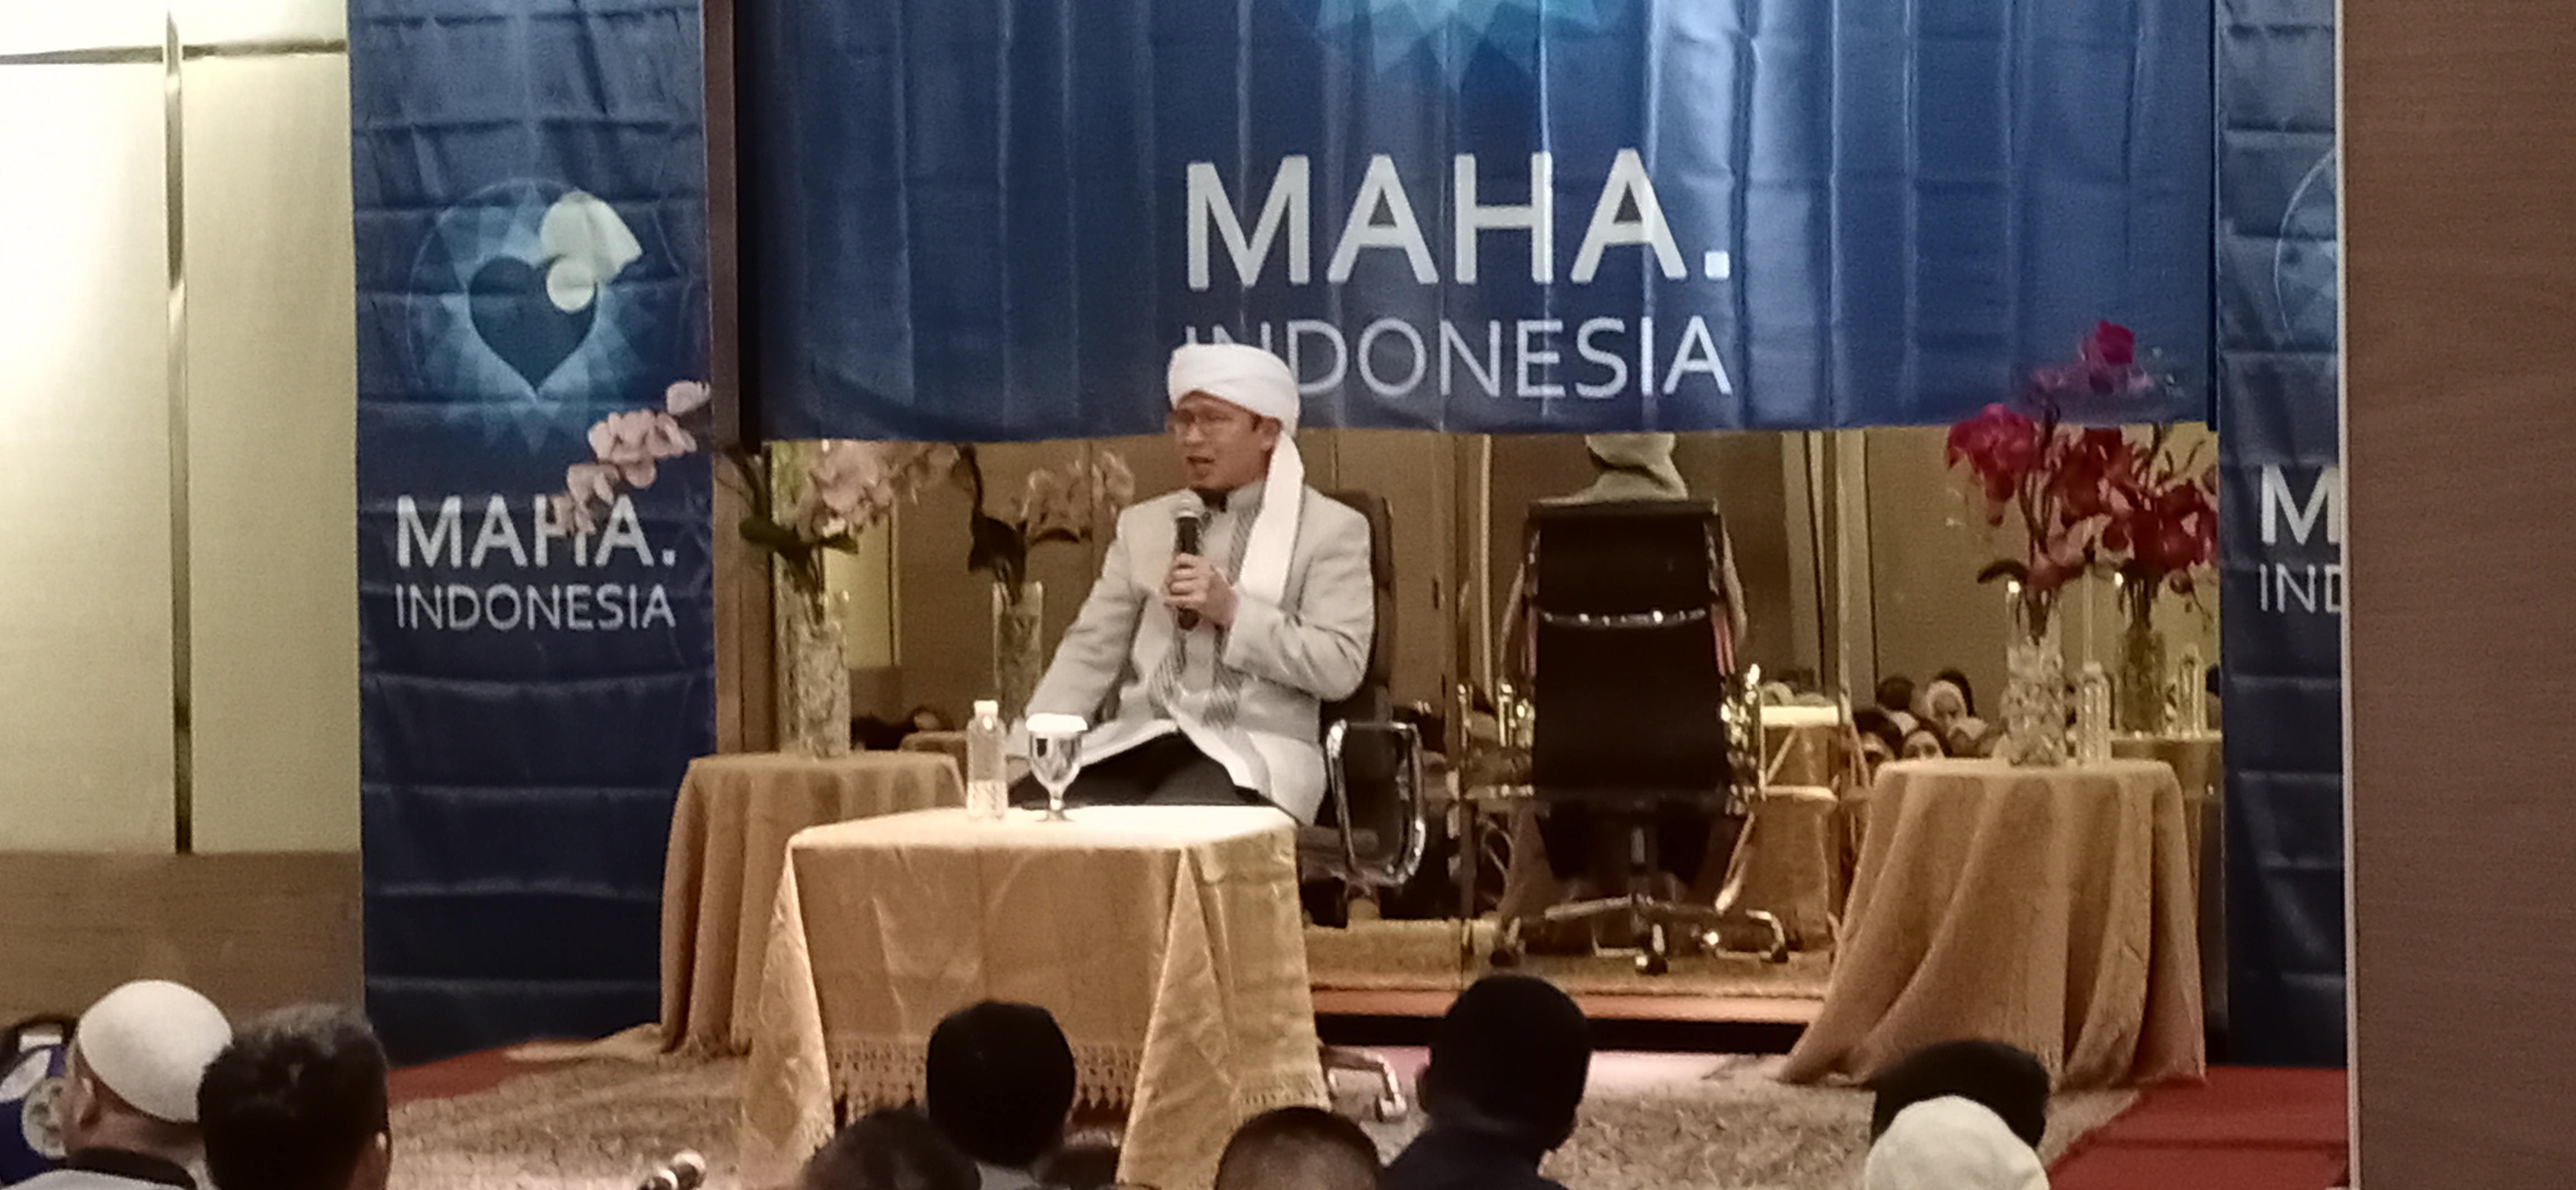 Abdullah Gymnastiar saat mengisi kajian keislaman yang diselenggarakan oleh Mata.Indoneisa di Ambhara Hotel, Jakarta, Rabu, 11 Maret 2020